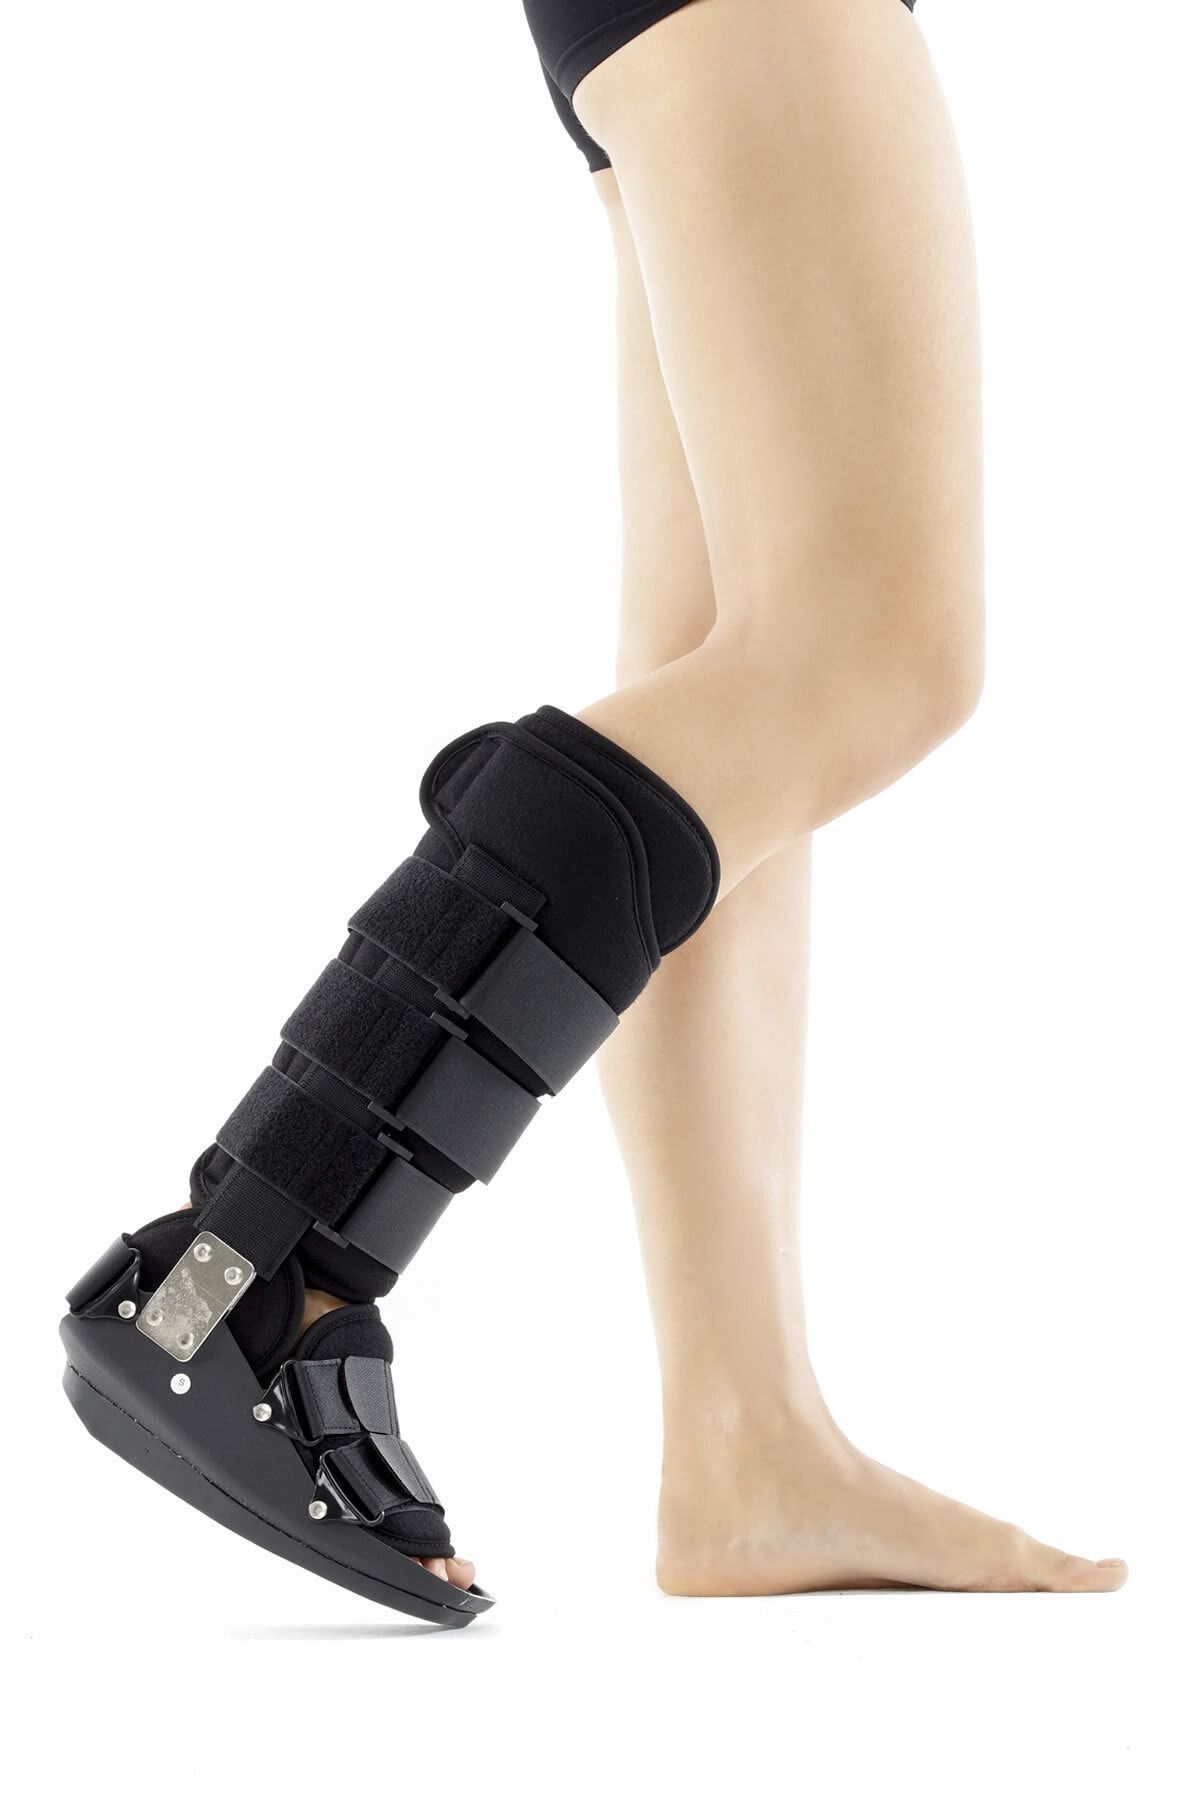 ORLEX Aşil Botu Kısa (tendon, Ligament Ve Doku Yaralanmalarında Ameliyat Sonrası Kullanılır)